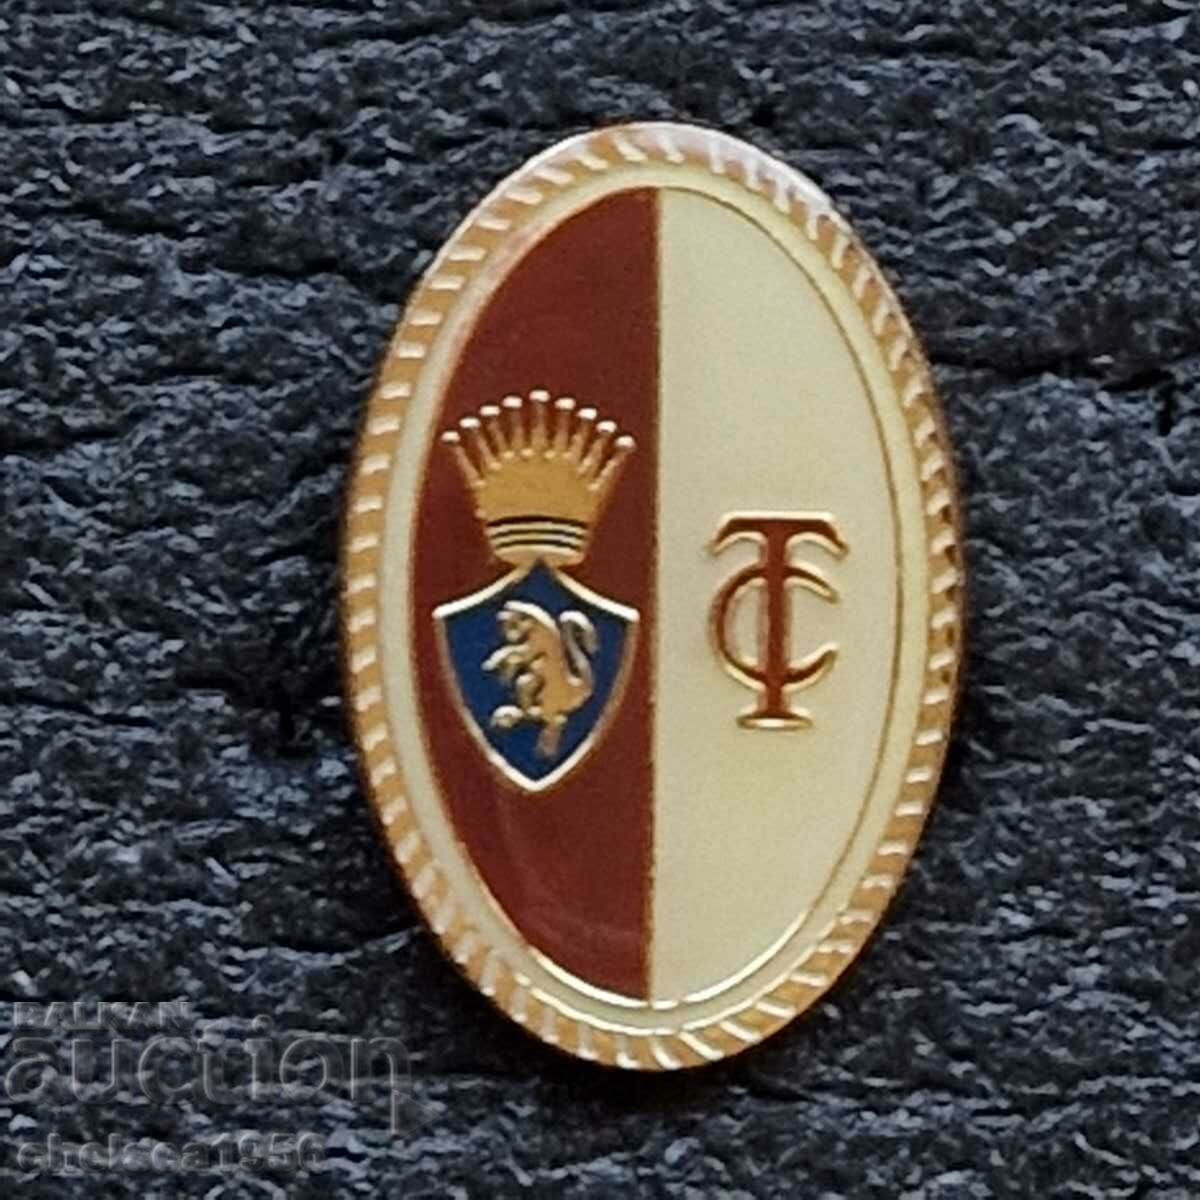 Turin Italy badge